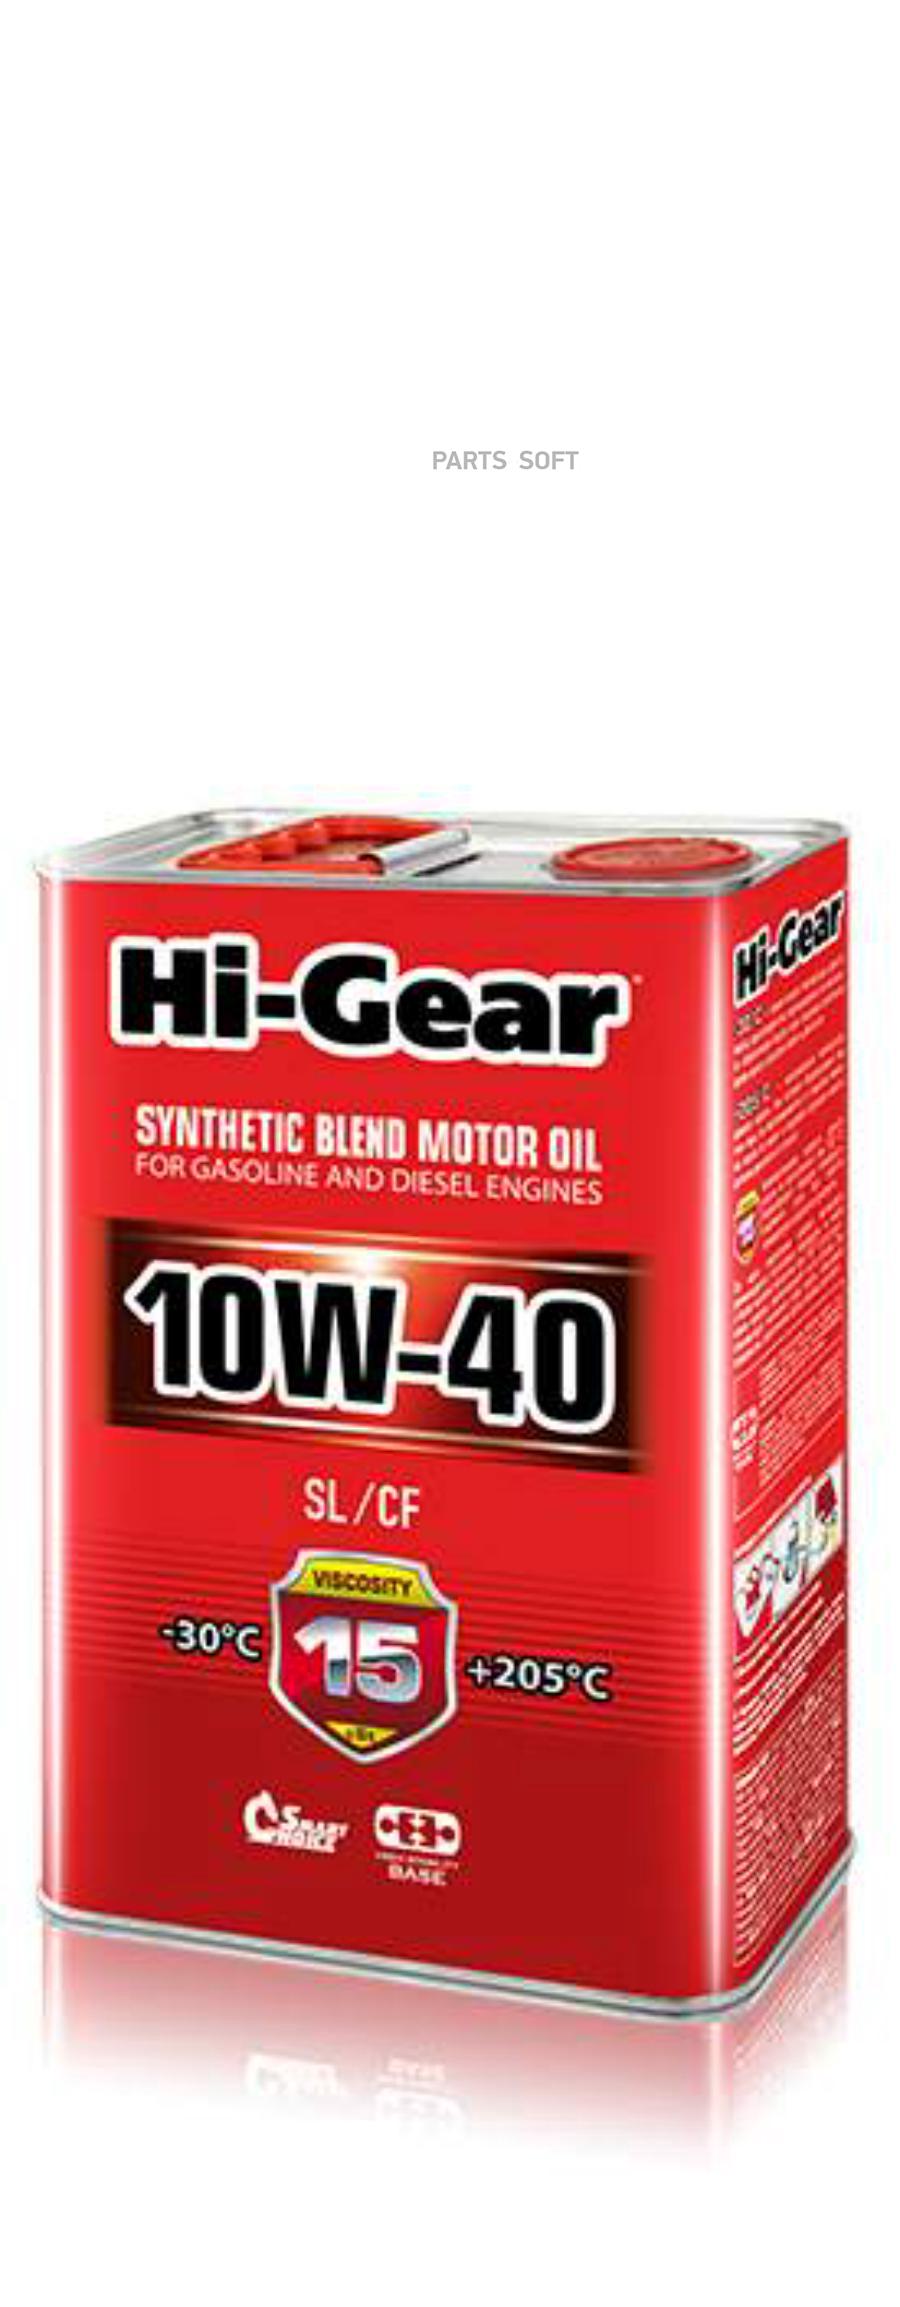 Моторное масло Hi-Gear полусинтетическое HG1134 Sl/Cf 10W40 4л